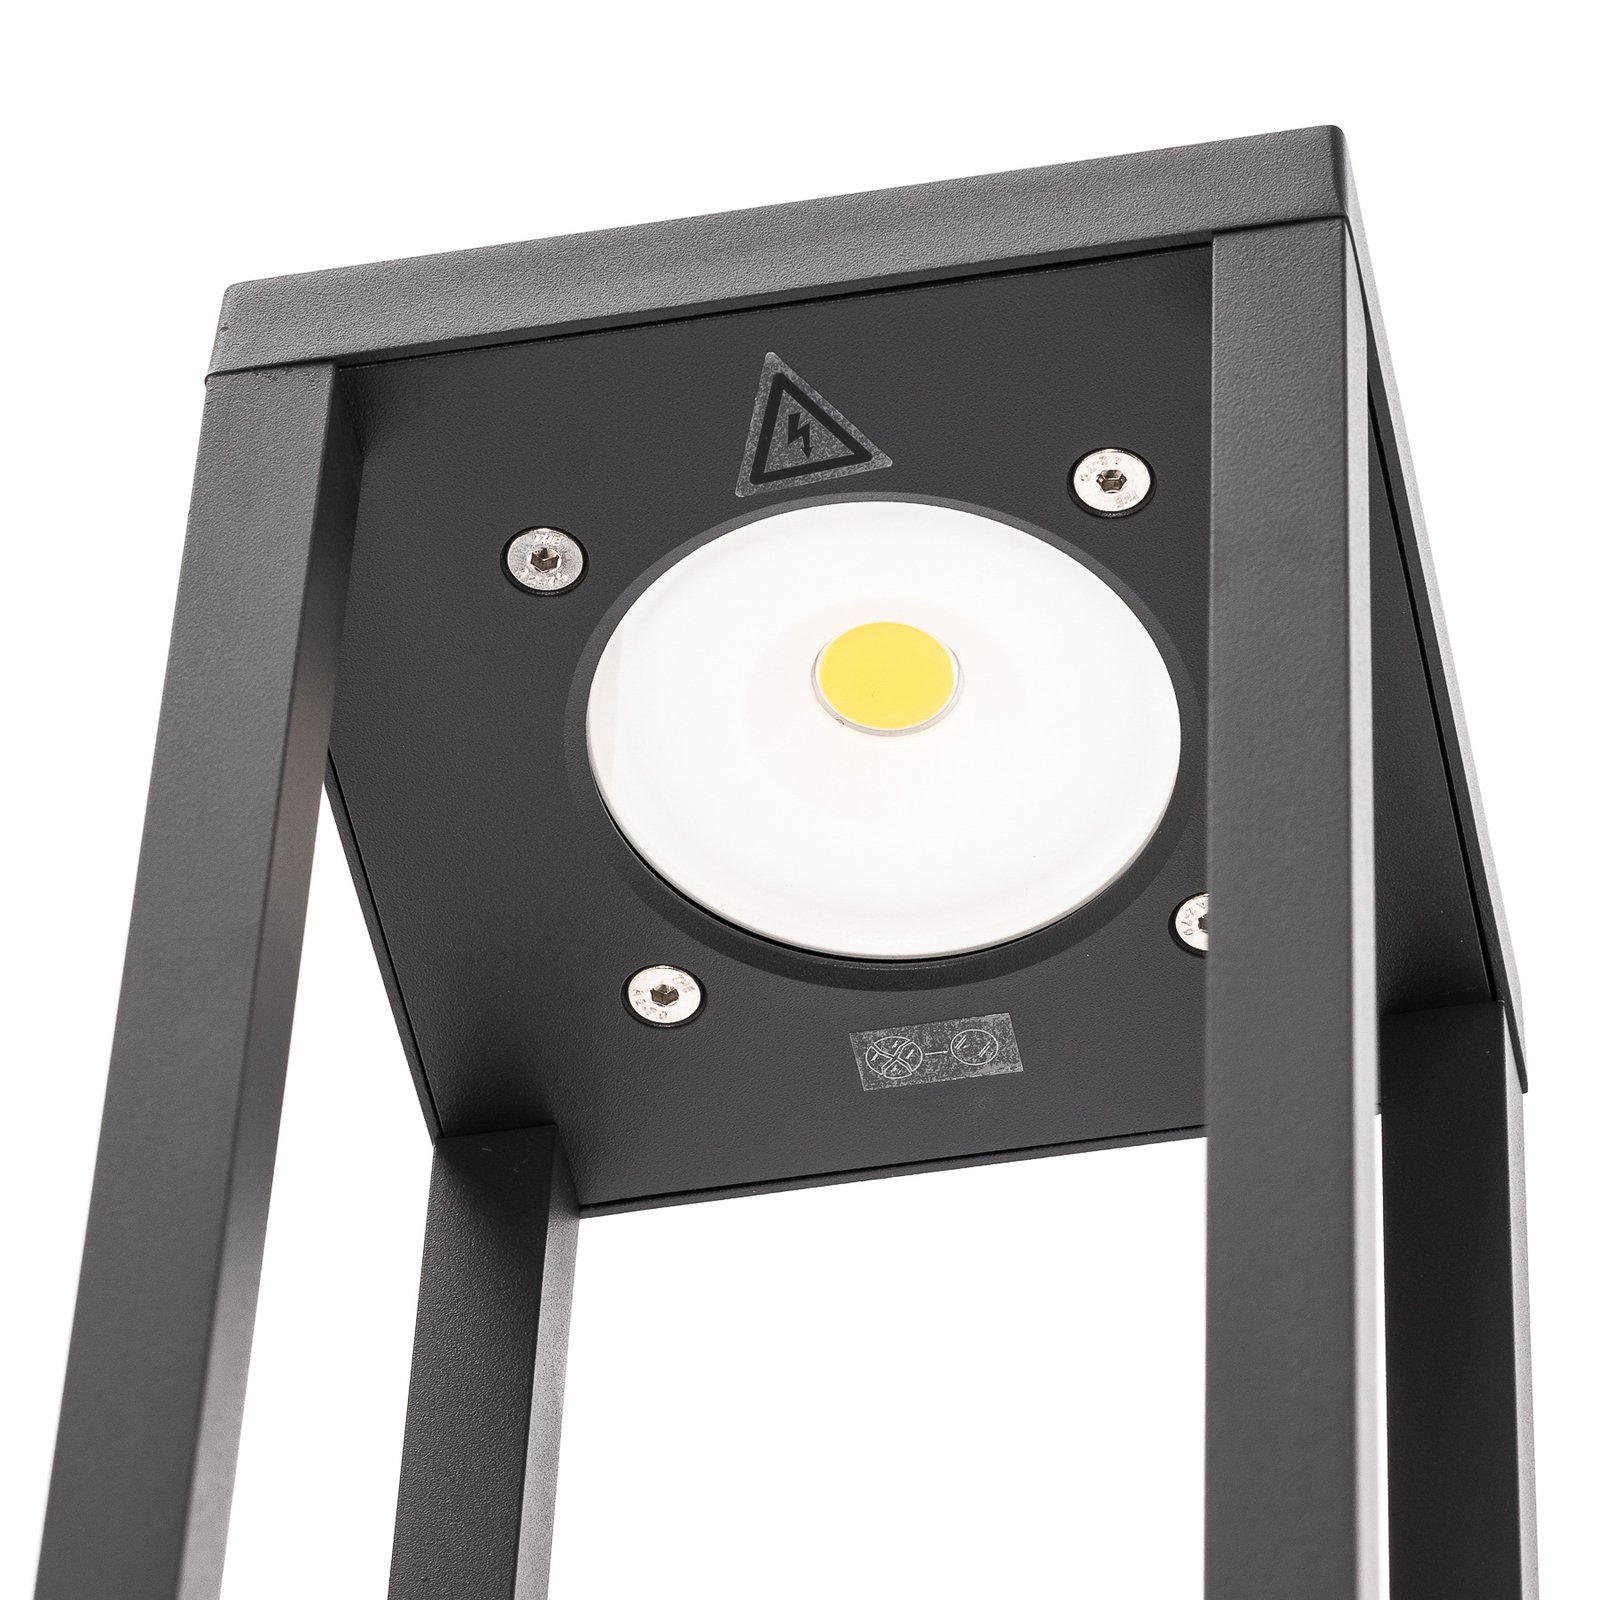 Sobremuro LED Carlota gris oscuro, 50 cm